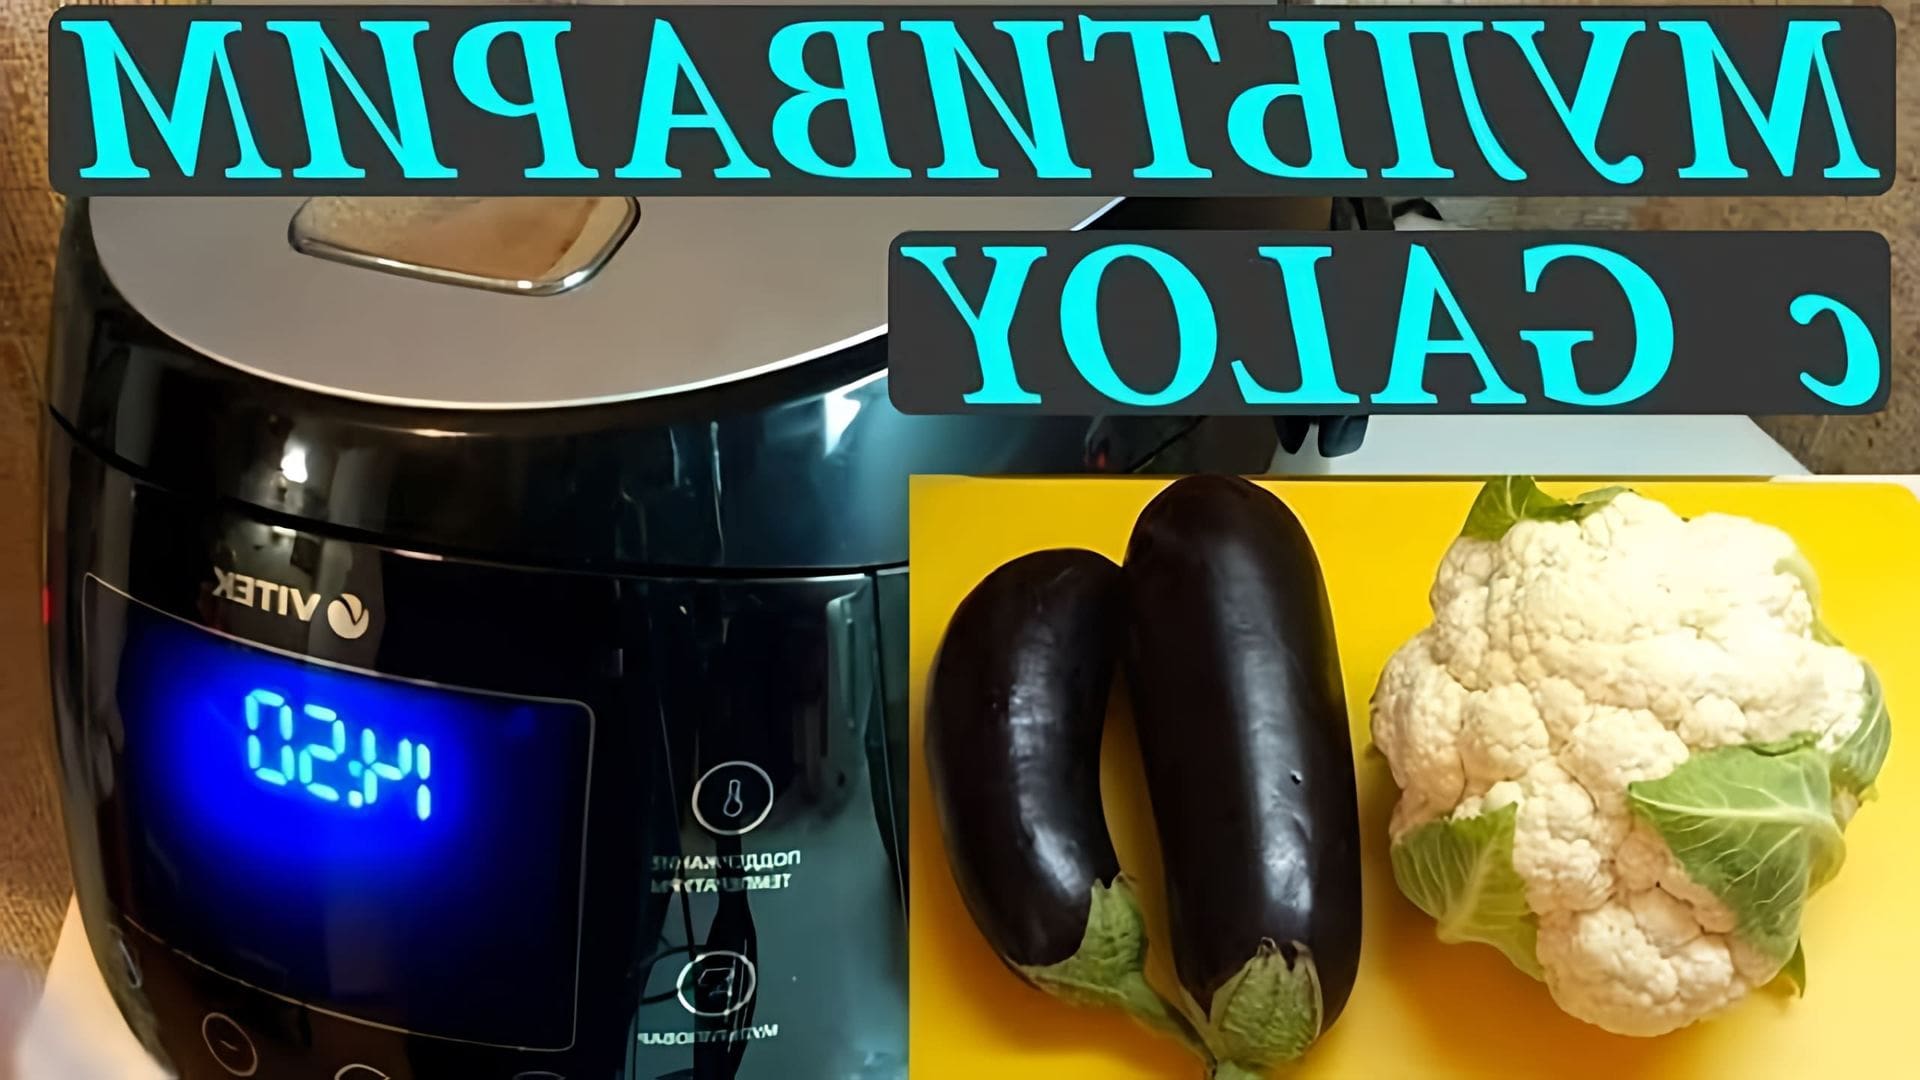 В этом видео демонстрируется рецепт приготовления овощей в мультиварке